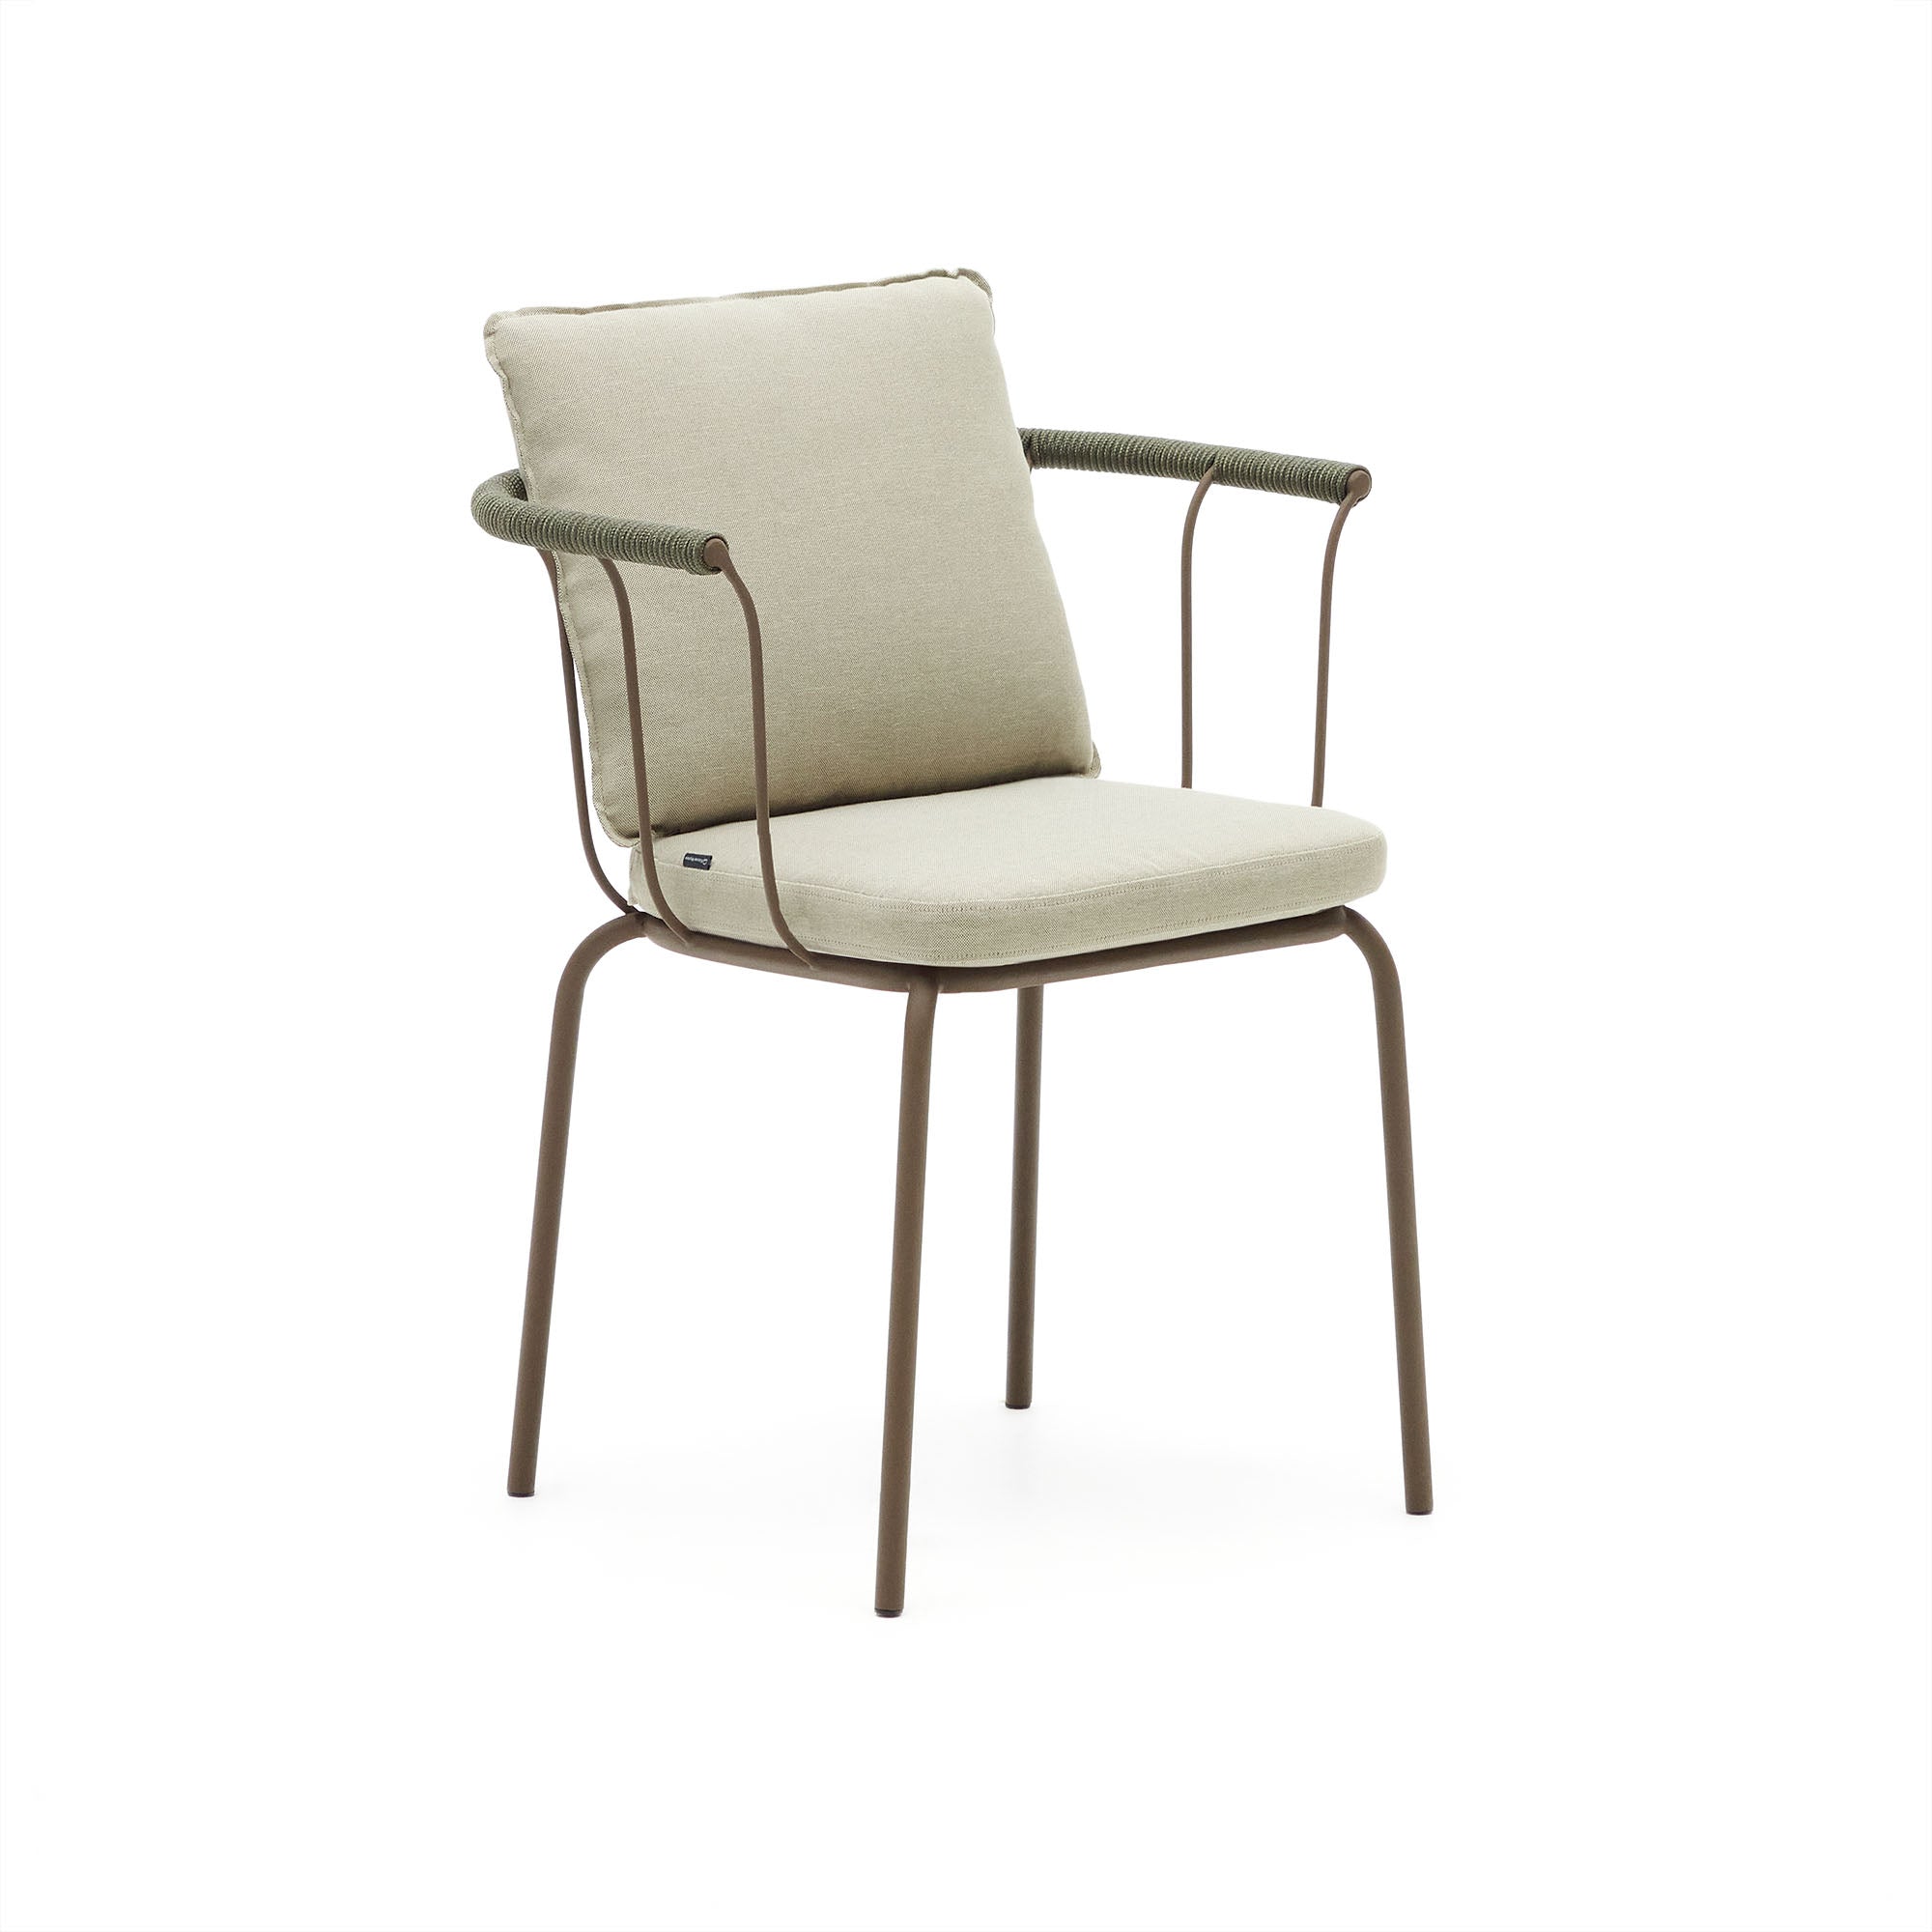 Salguer egymásra rakható szék zsinórból és acélból, barna festett kivitelben